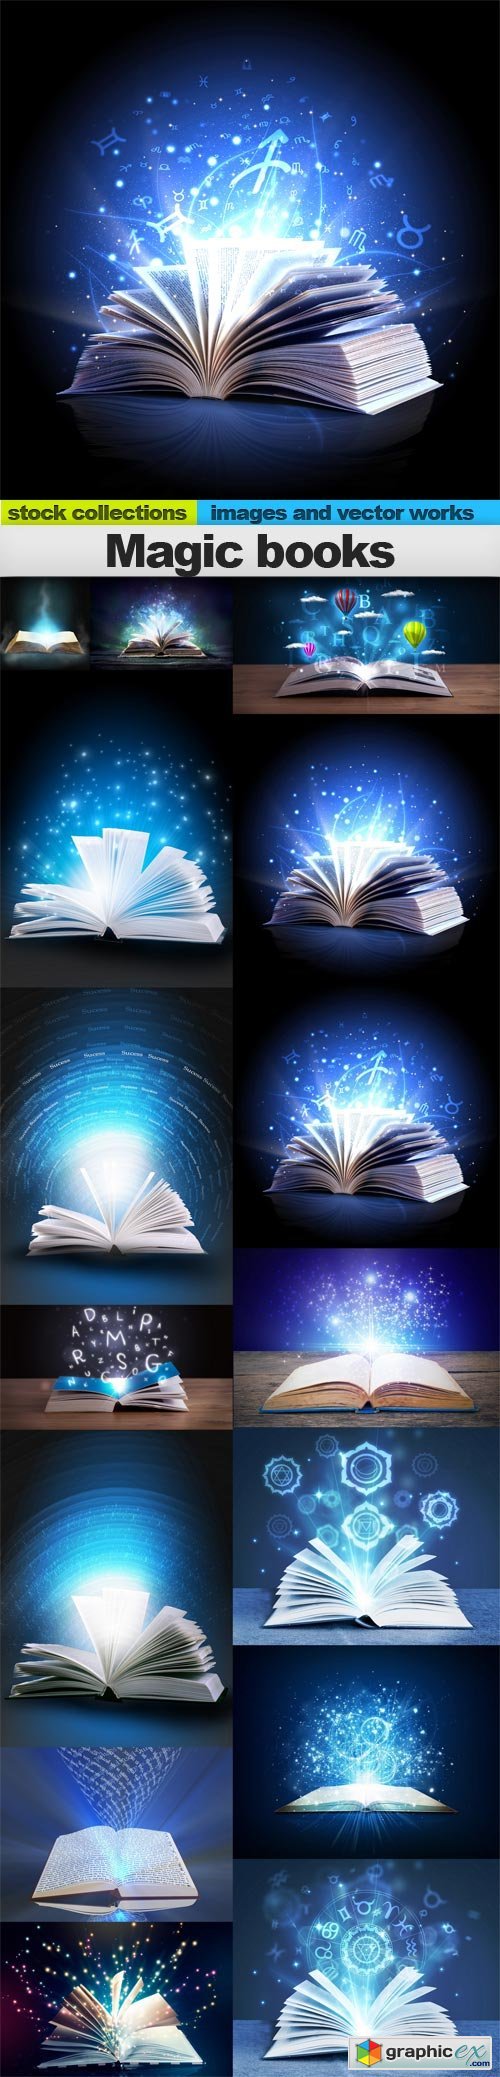 Magic books, 15 x UHQ JPEG